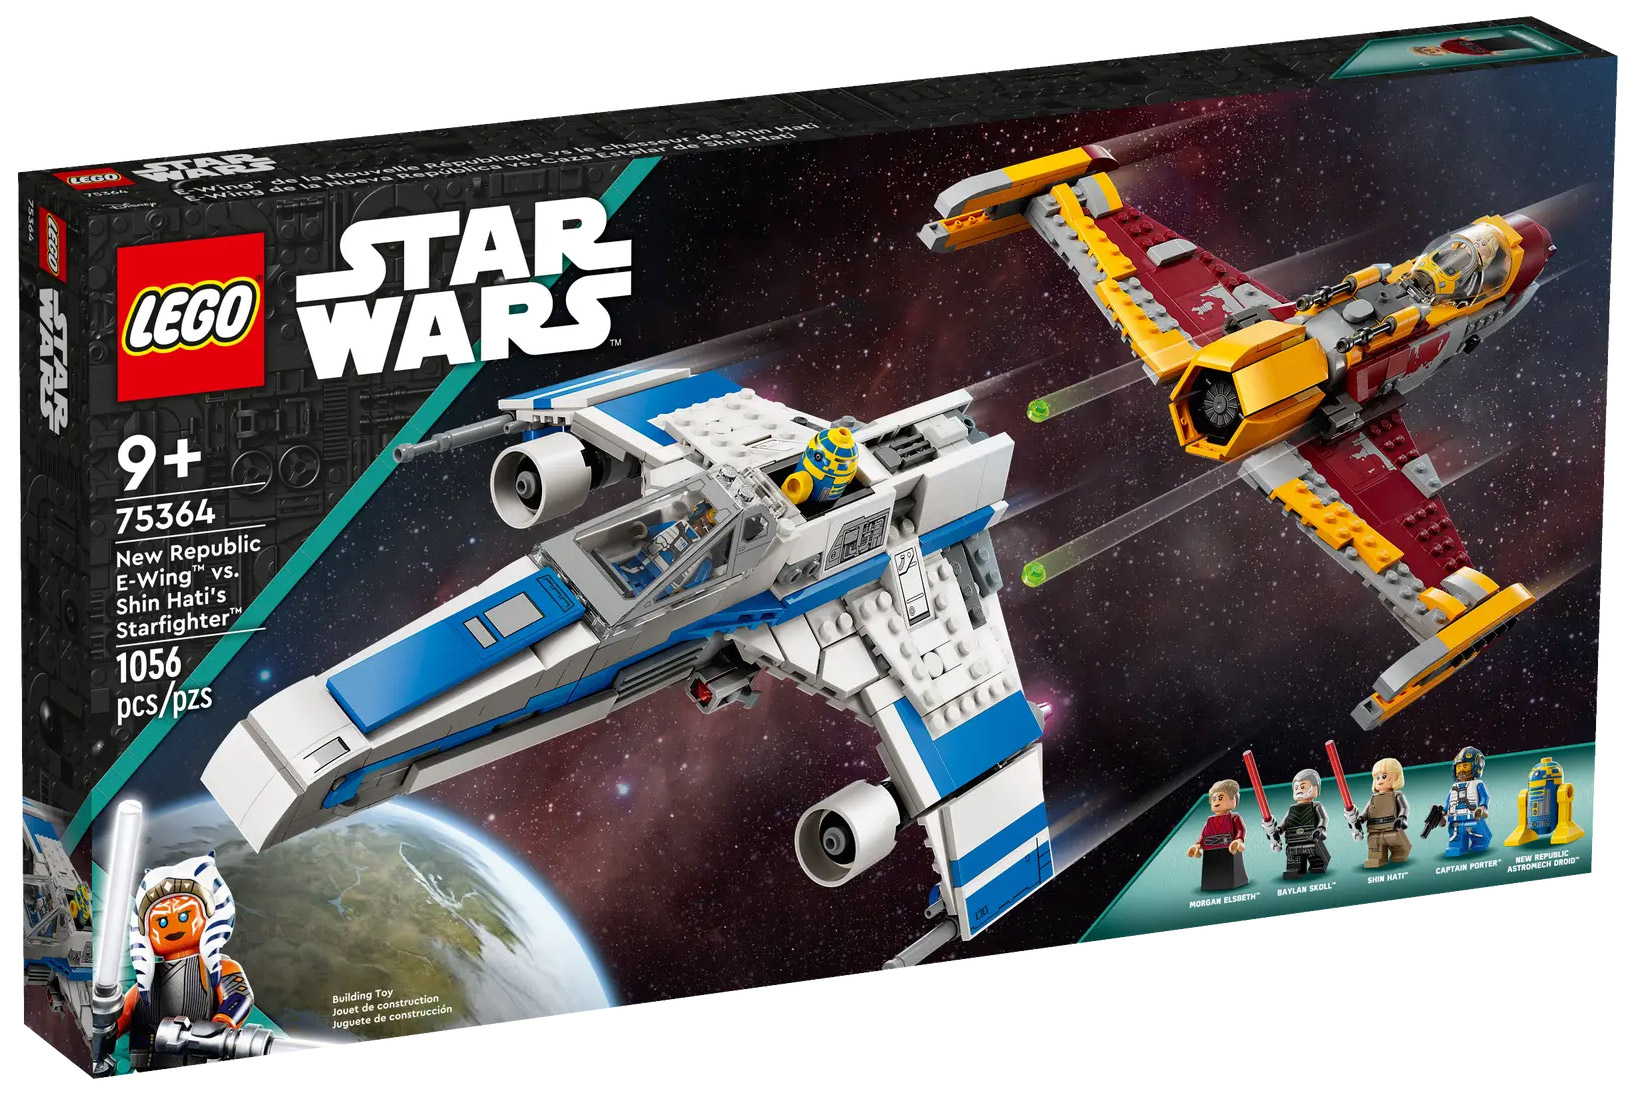 LEGO Star Wars 75364 pas cher, L’E-wing de la Nouvelle République